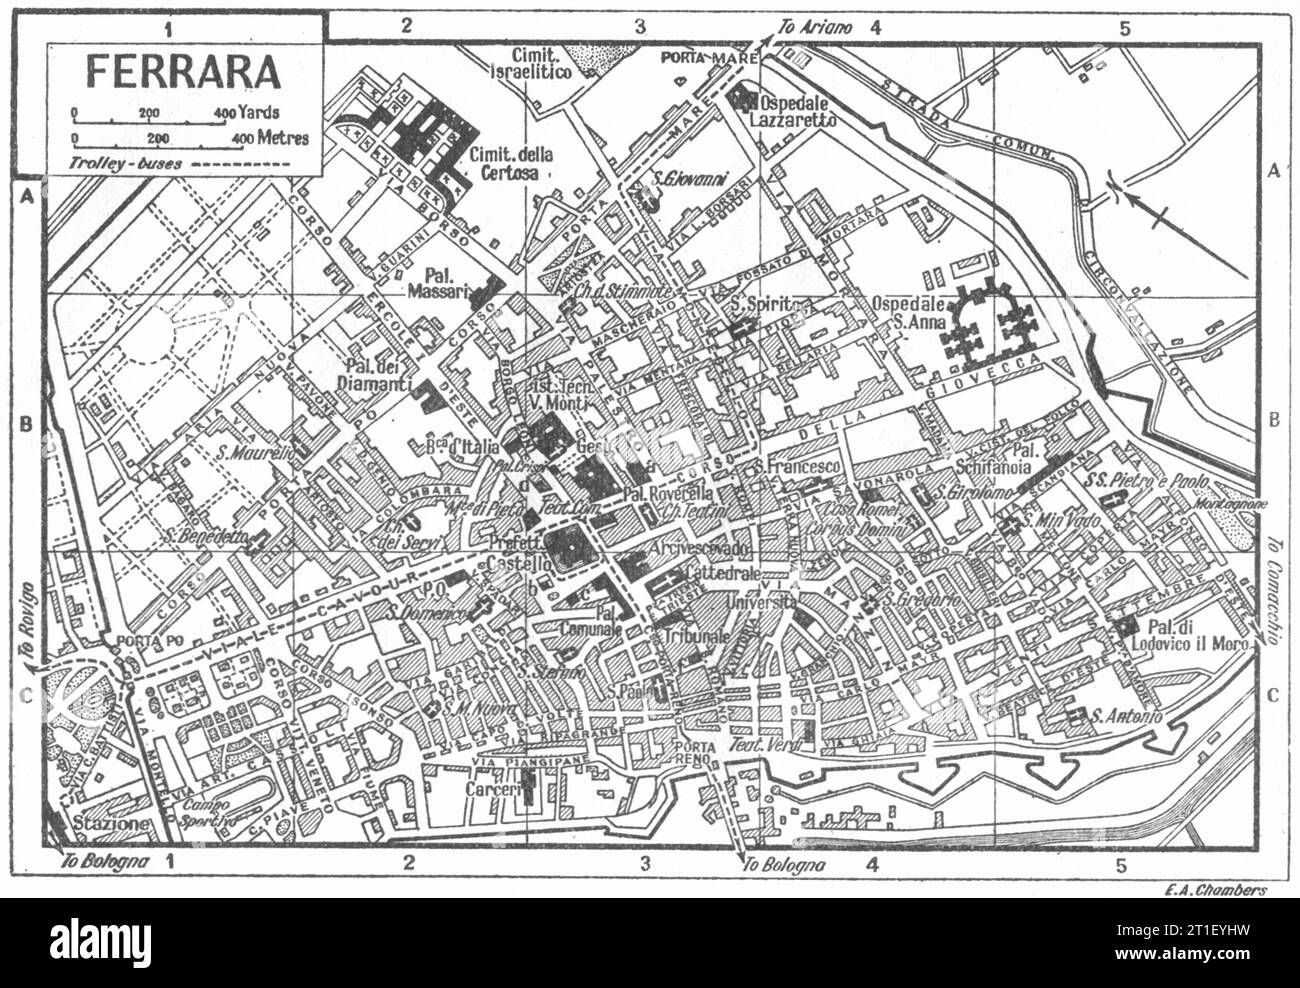 Comune di FERRARA. Italia 1953 vecchia mappa d'epoca Foto Stock